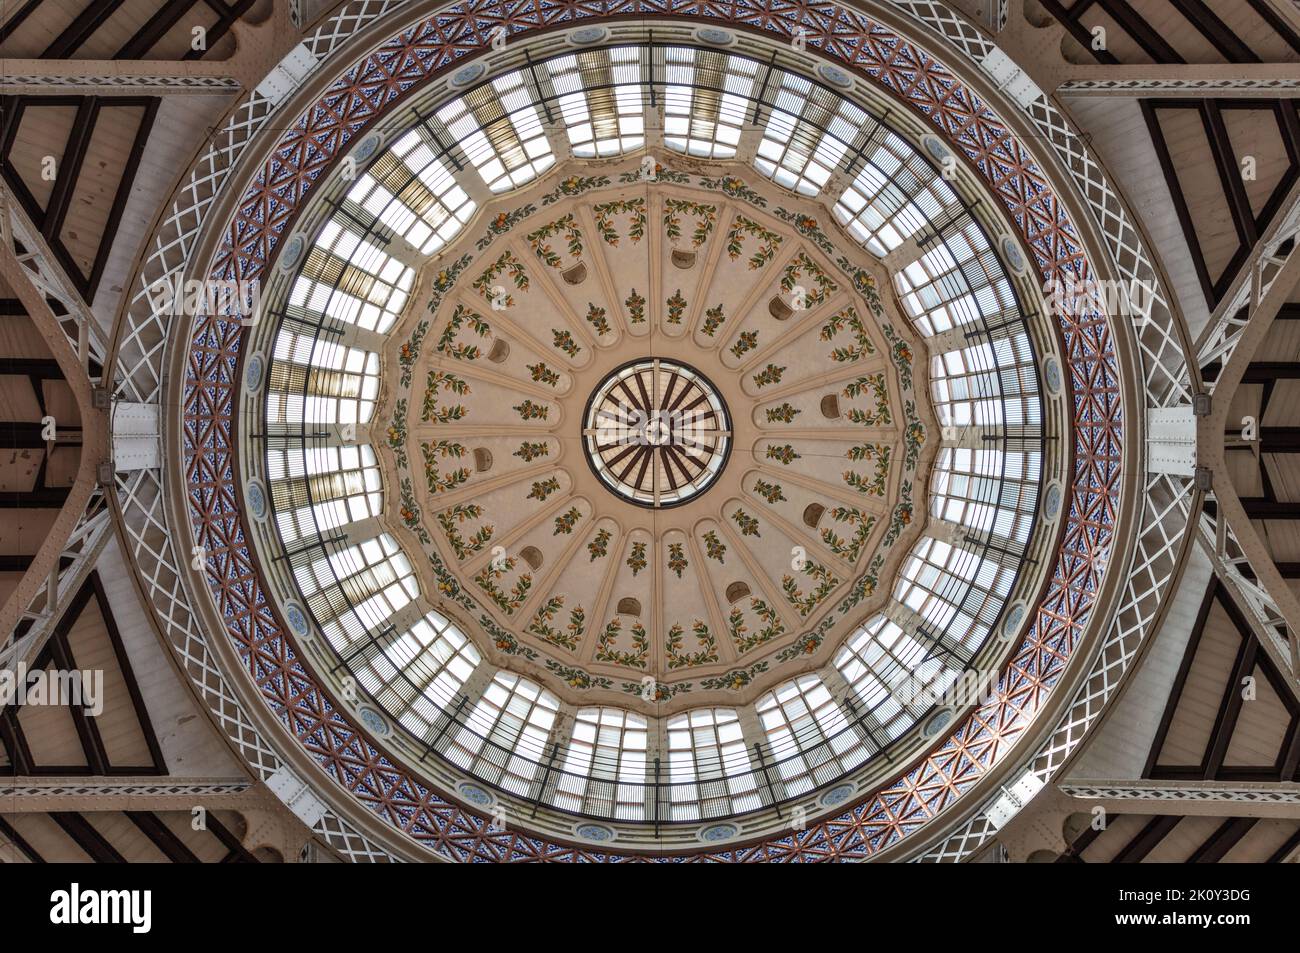 Dome interior of the the Central Market of Valencia (Mercado Central de Valencia). Stock Photo